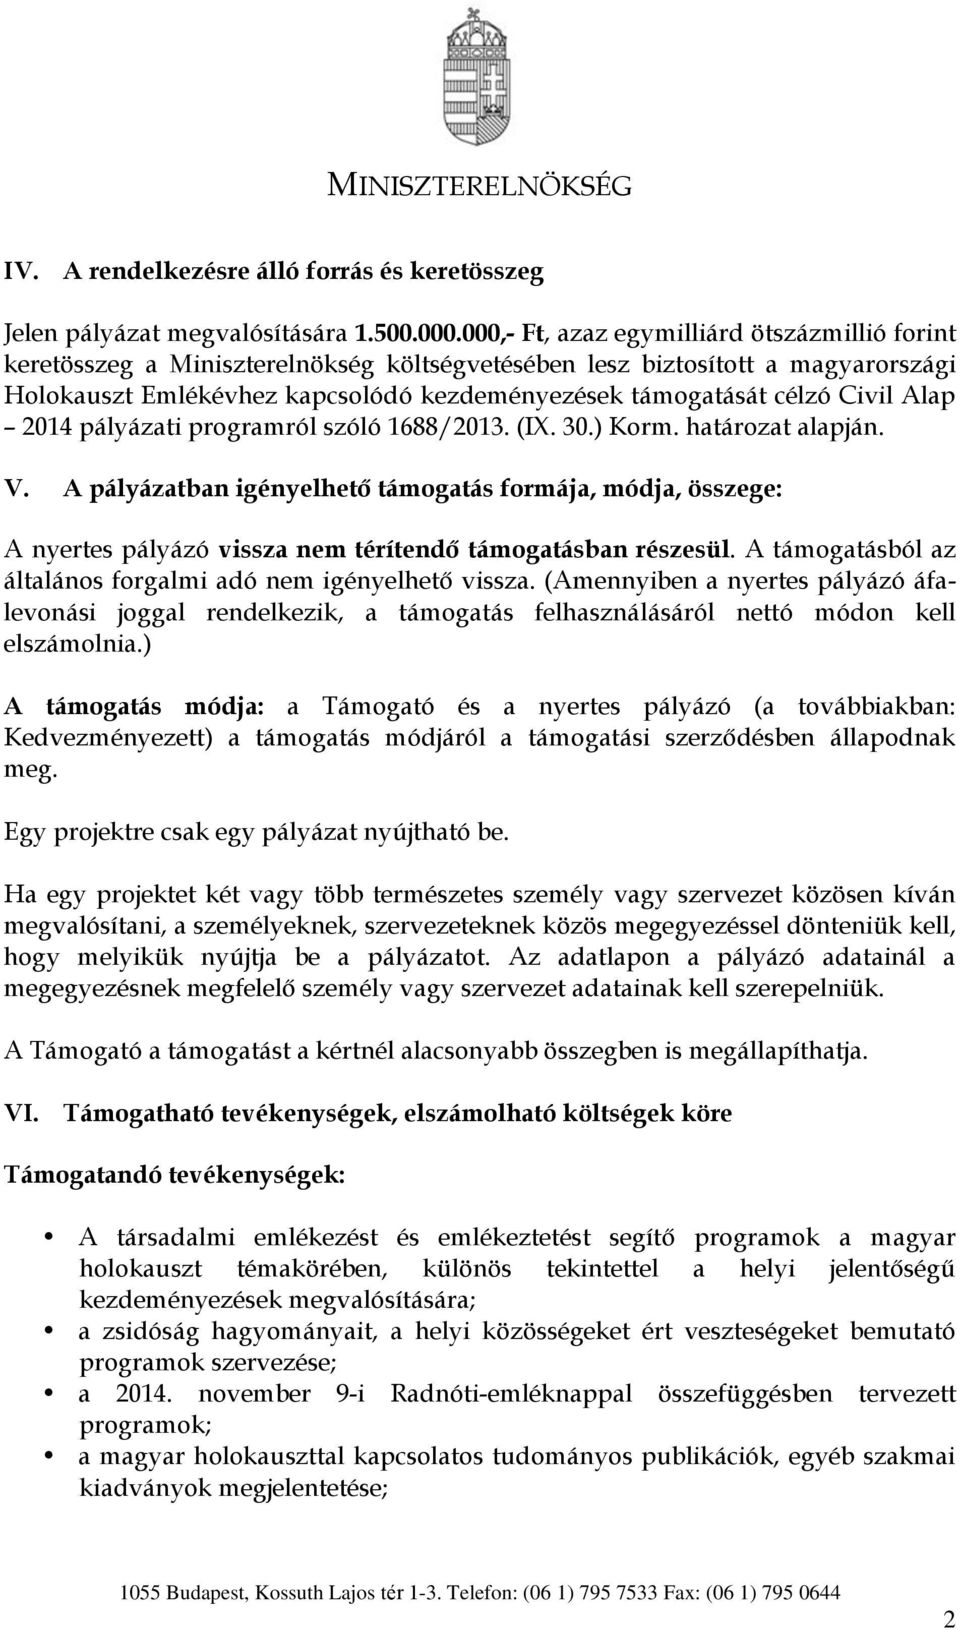 Civil Alap 2014 pályázati programról szóló 1688/2013. (IX. 30.) Korm. határozat alapján. V.